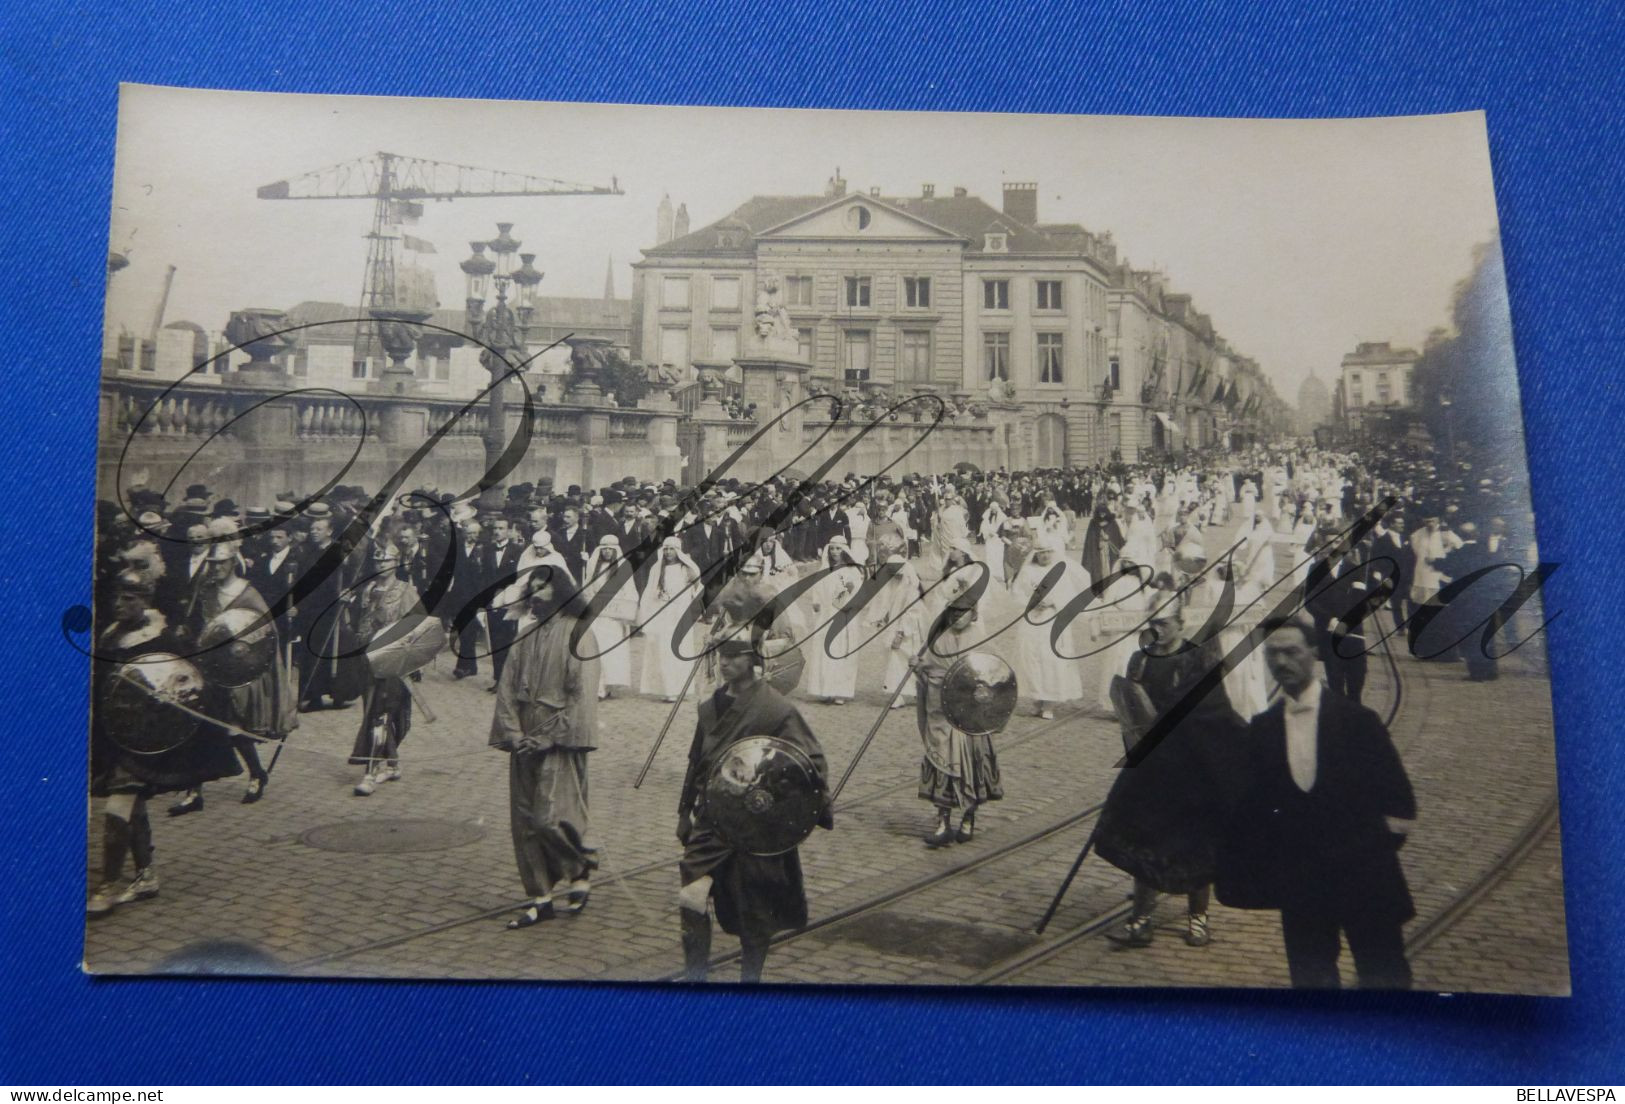 Bruxelles lot x 9 fotokaarten -carte photo veritable Saint gedule Procession N.D. de la Paix O.L.V van Peis en Vrede